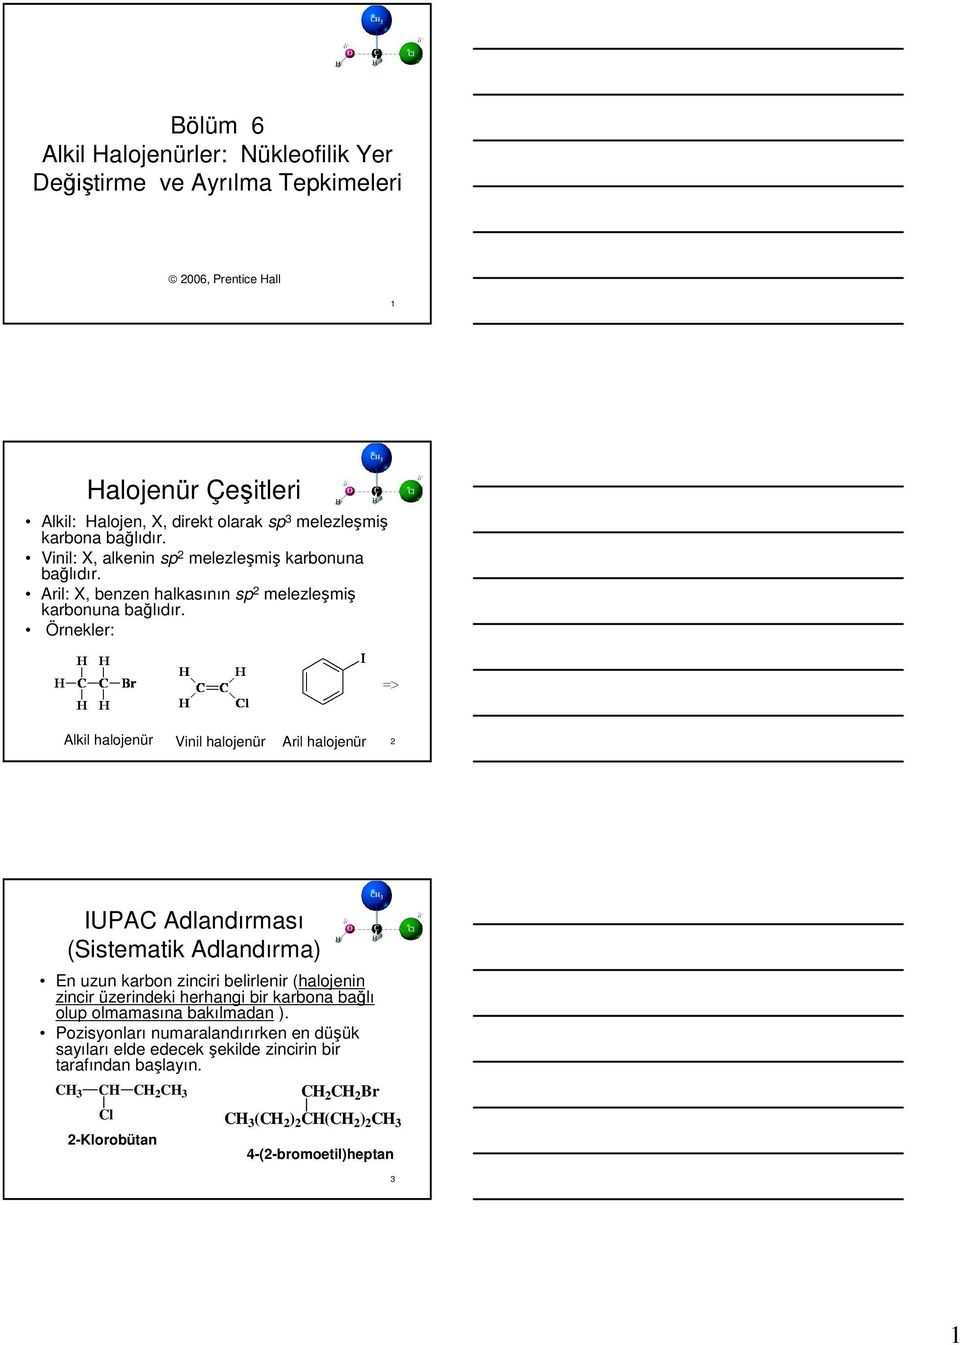 Örnekler: Alkil halojenür Vinil halojenür Aril halojenür 2 IUPA Adlandırması (Sistematik Adlandırma) En uzun karbon zinciri belirlenir (halojenin zincir üzerindeki herhangi